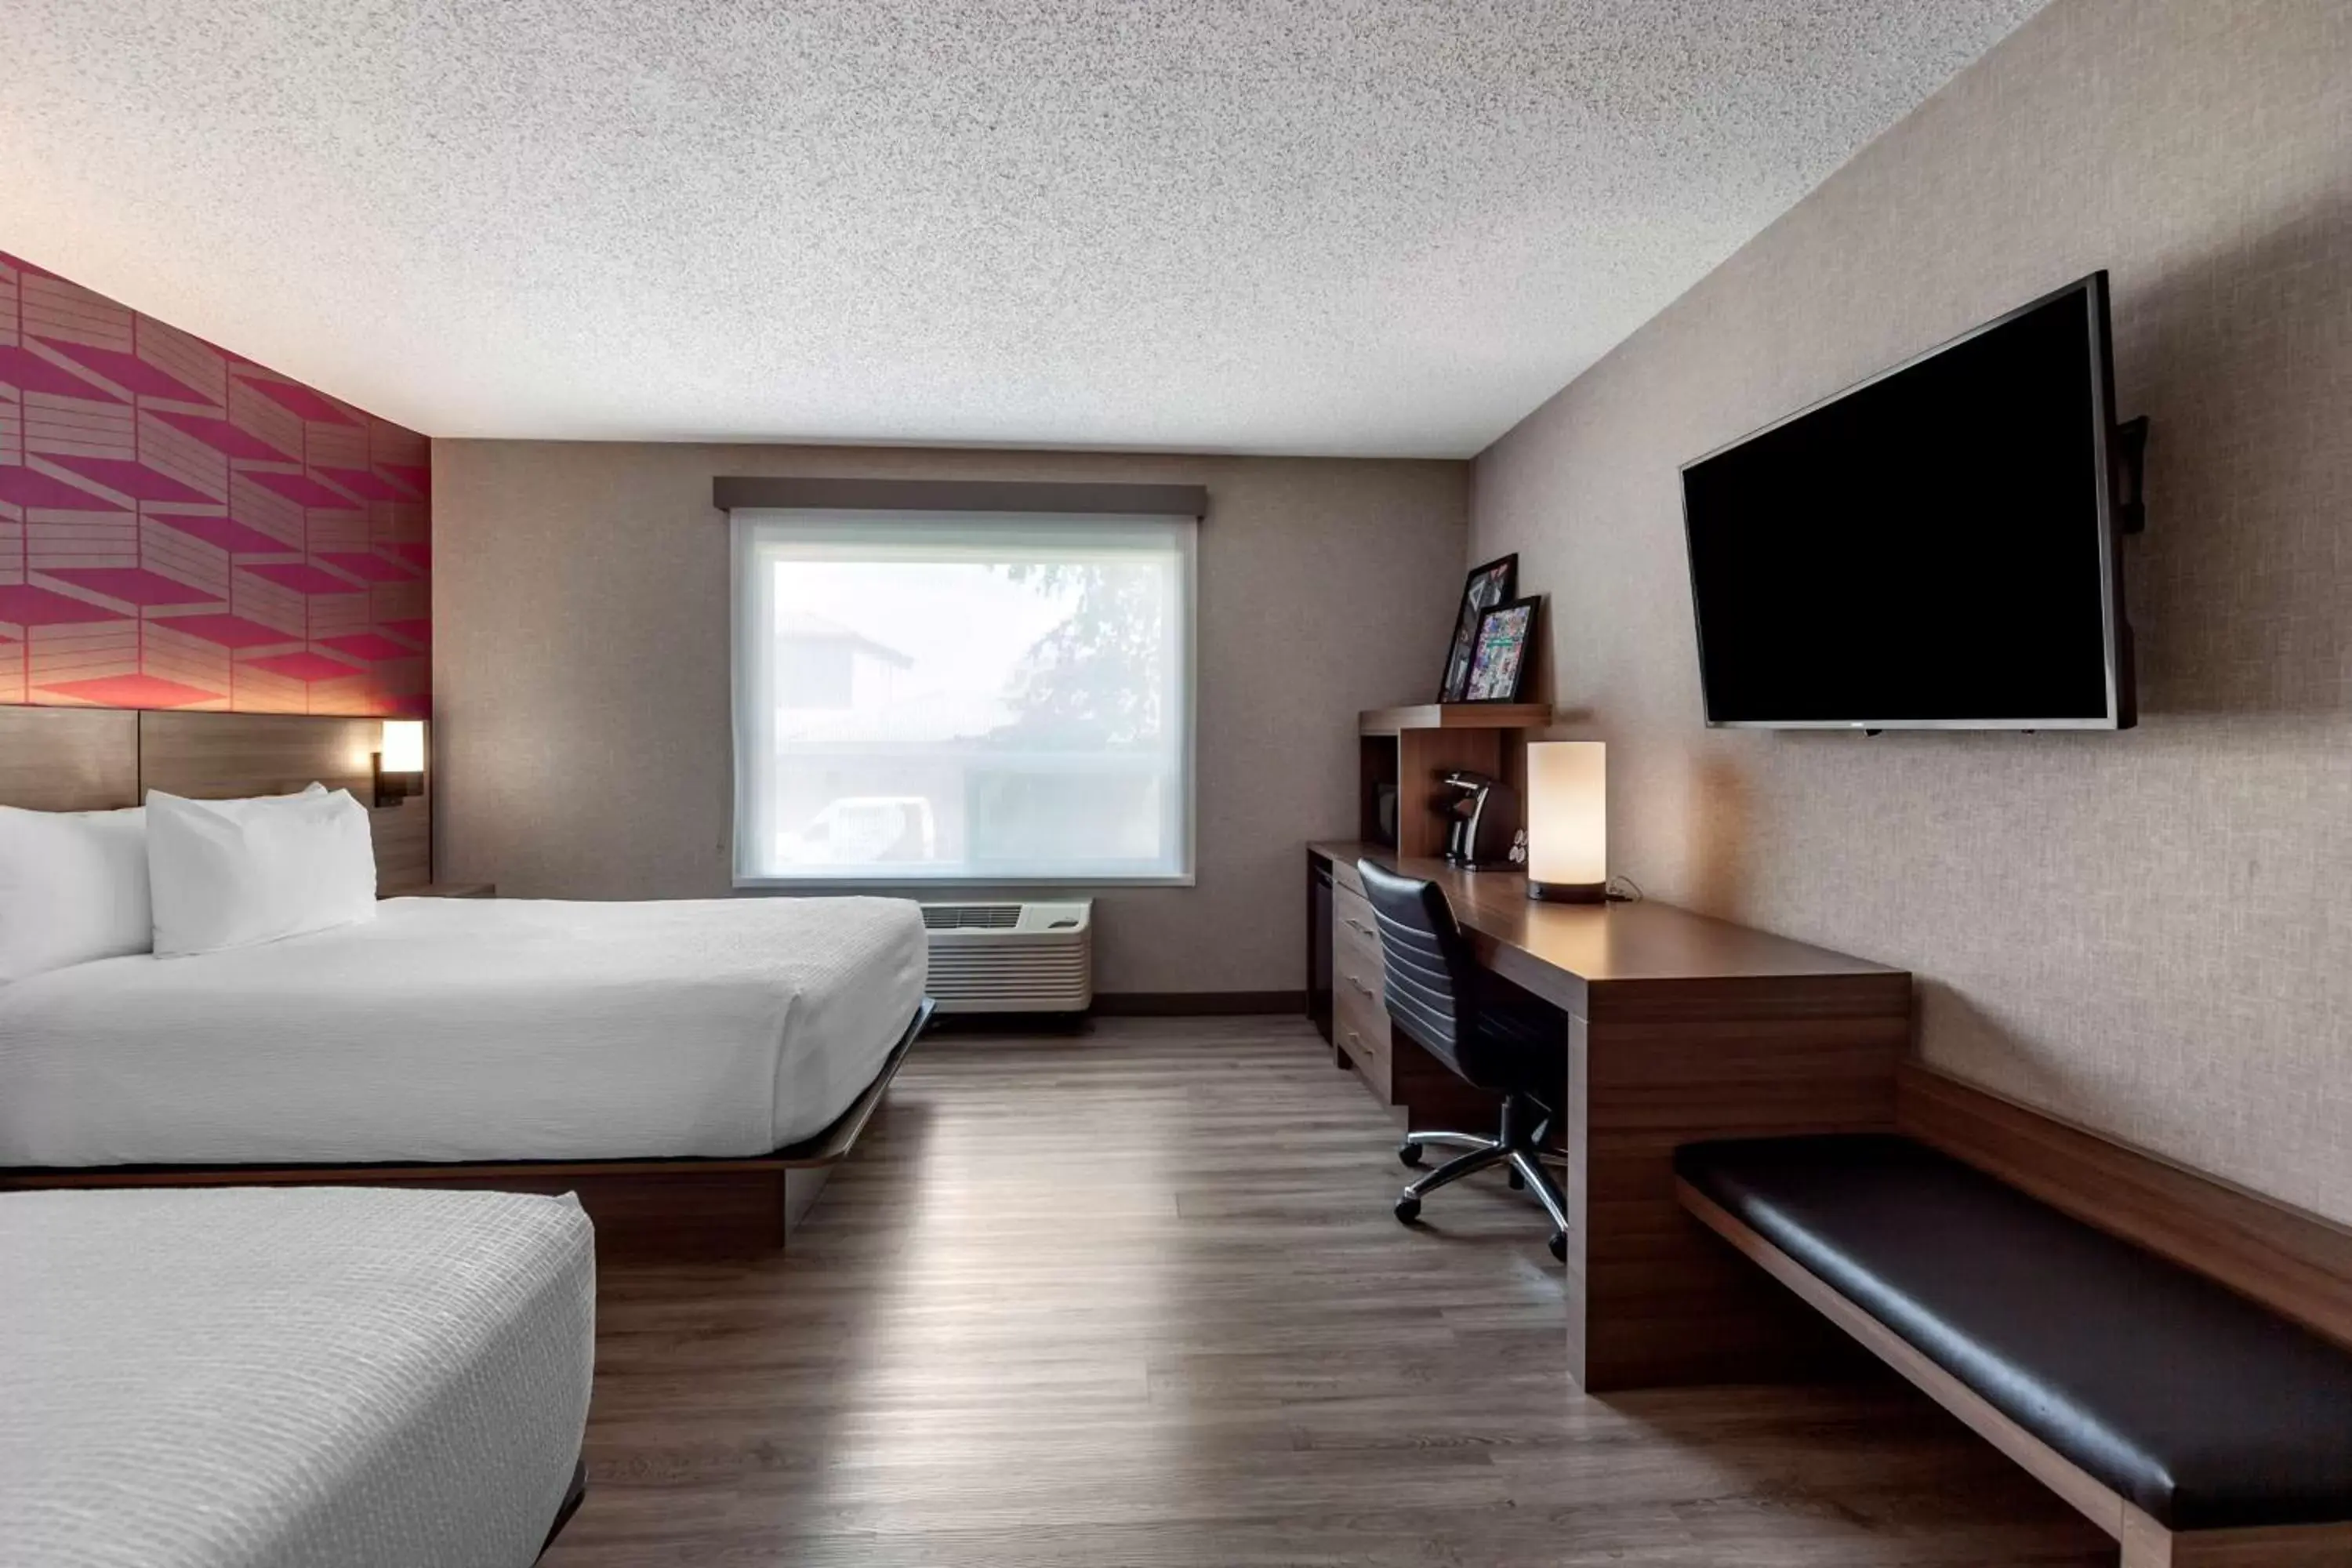 Bedroom, TV/Entertainment Center in Best Western Plus West Edmonton